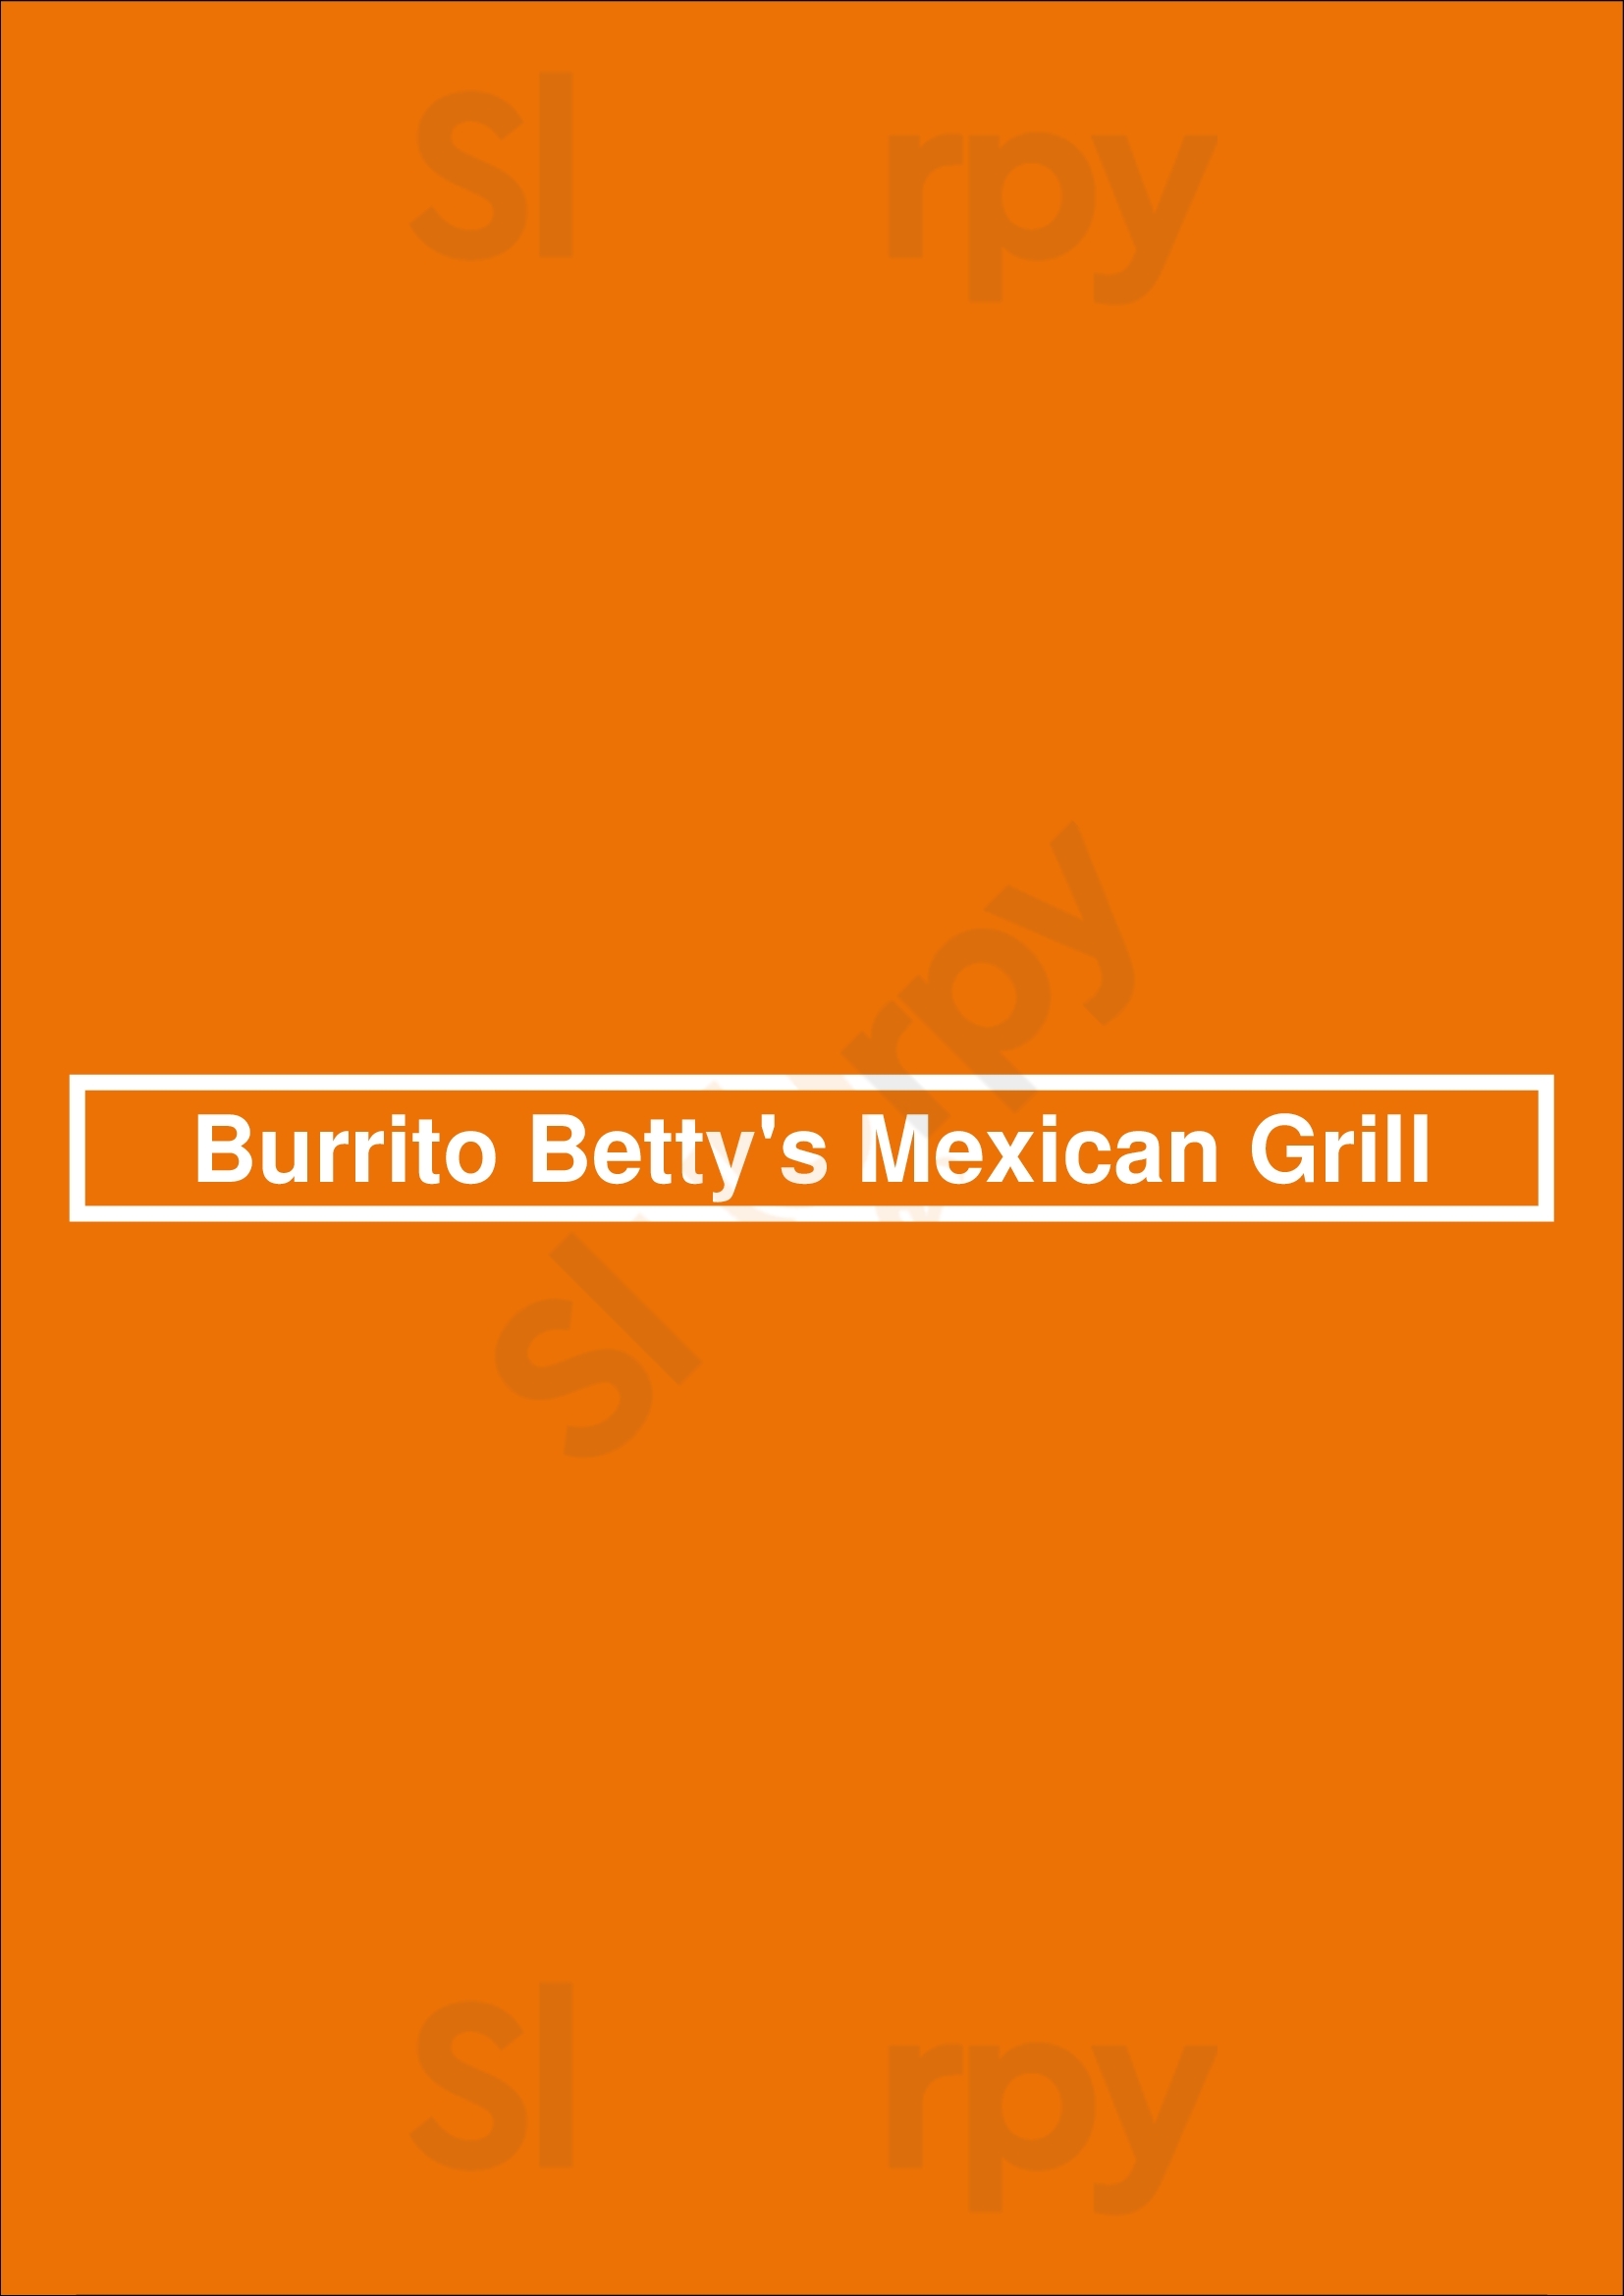 Burrito Betty's Mexican Grill York Menu - 1